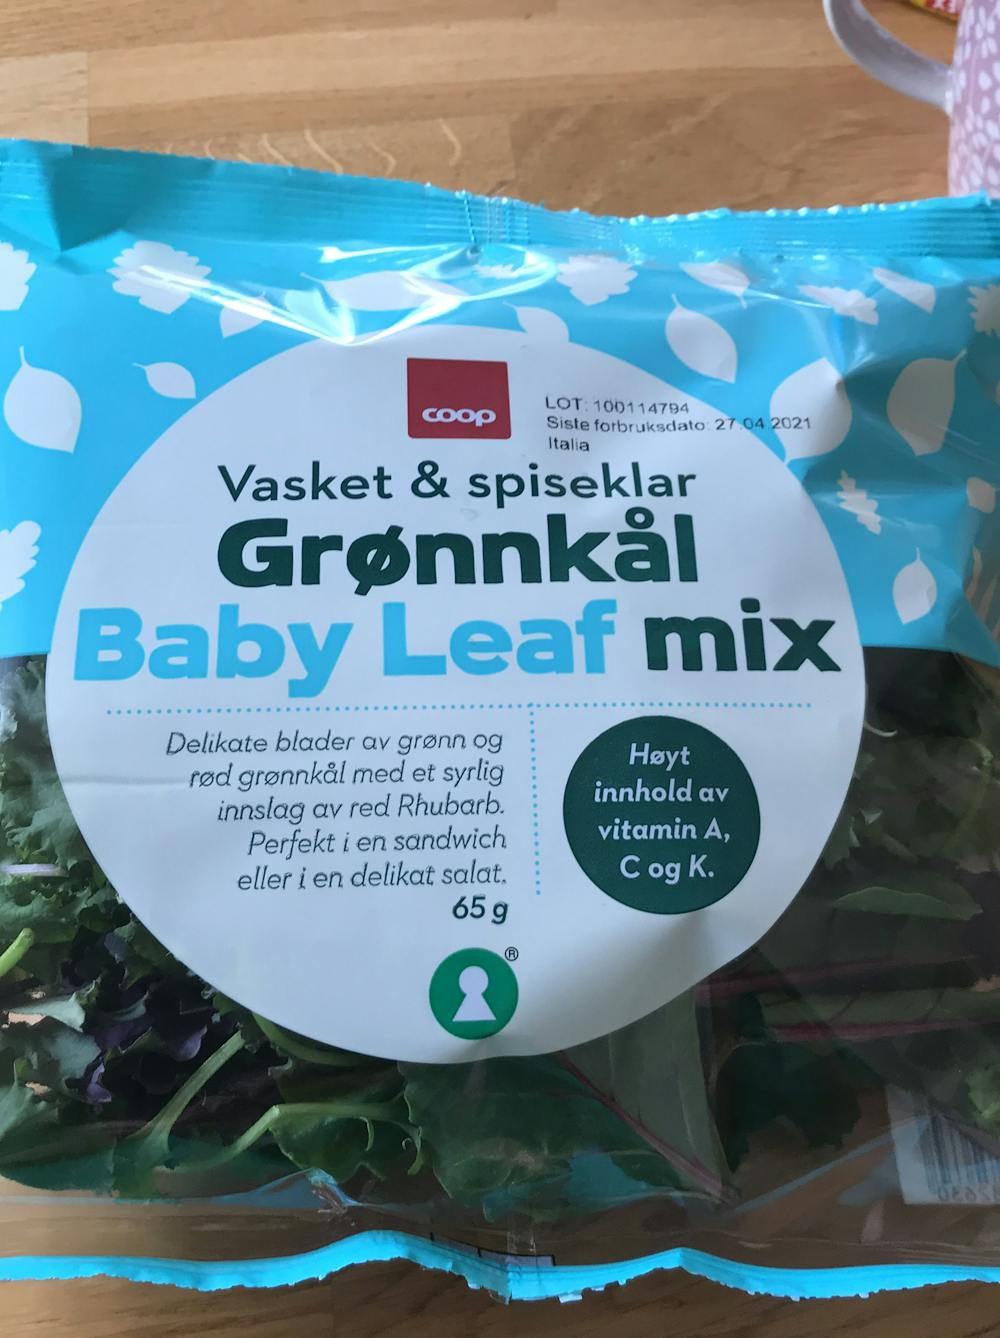 Grønnkål baby leaf mix, Coop